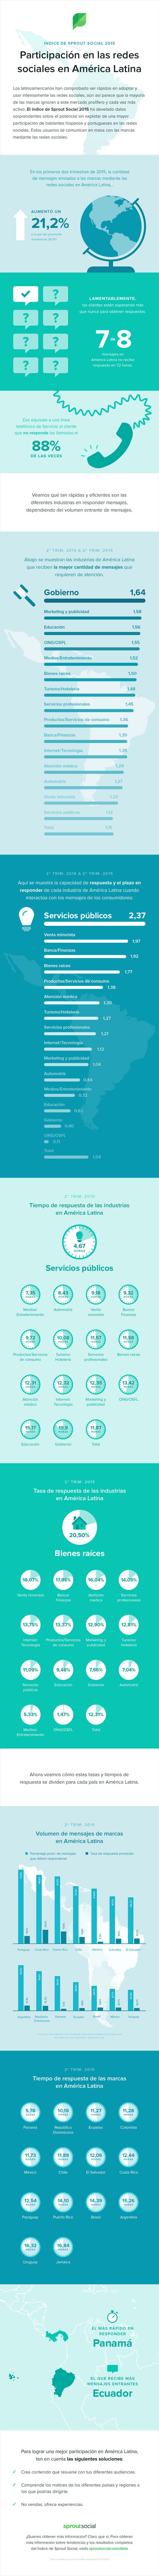 Índice de Sprout Social 2015: Participación en  las redes sociales  en América Latina